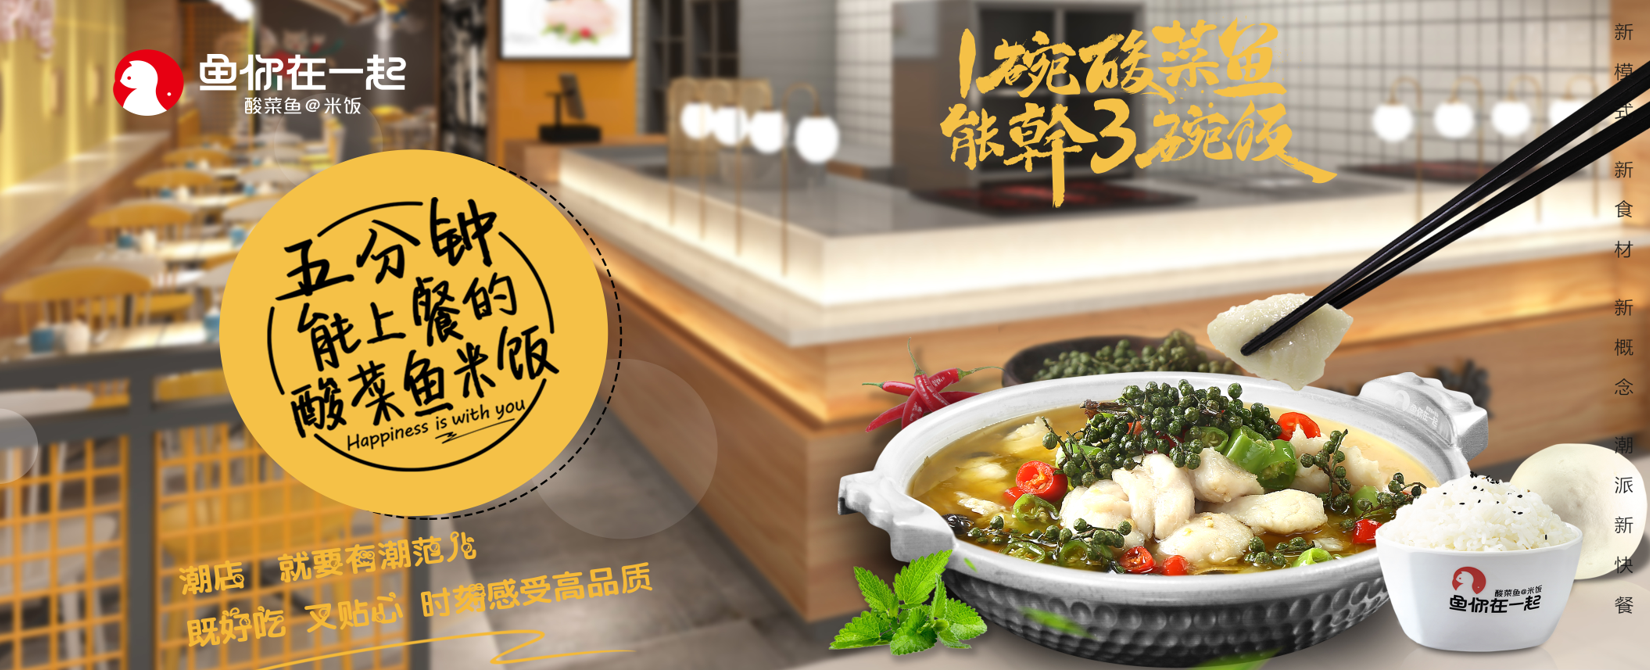 诞生一年半的酸菜鱼品牌“鱼你在一起”荣登中国快餐百强企业